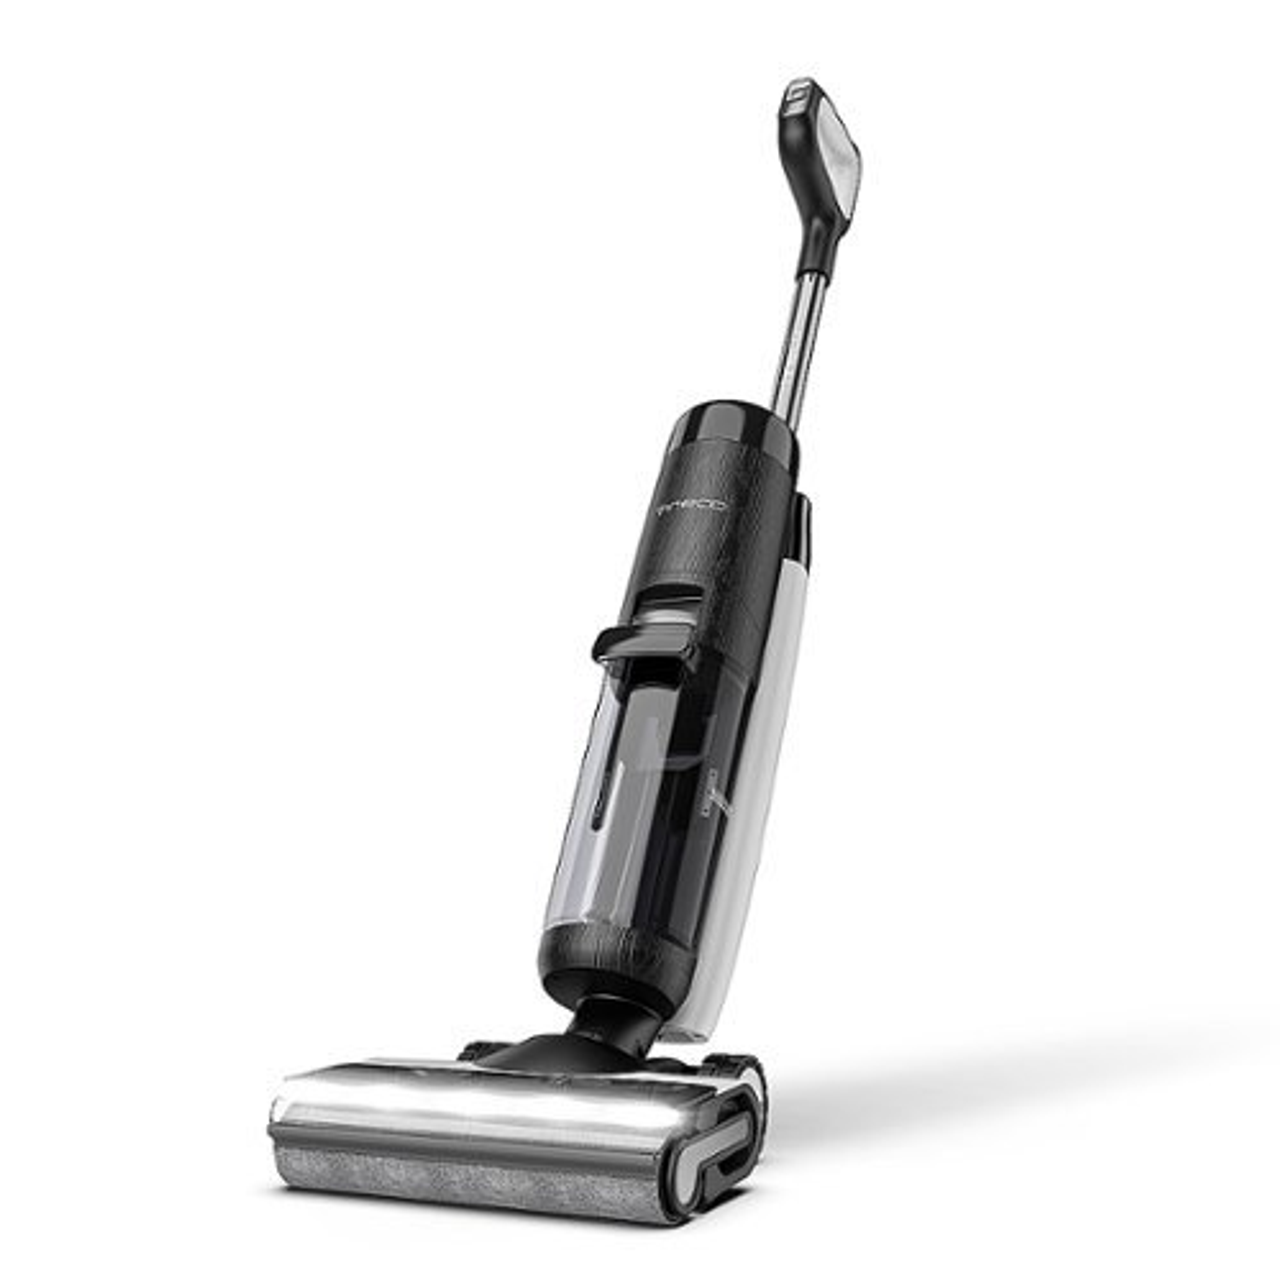 Tineco - Floor One S7 Pro - 4 in 1: Mop, Vacuum, Sanitize & Self Clean Smart Floor Washer with iLoop Smart Sensor - Black